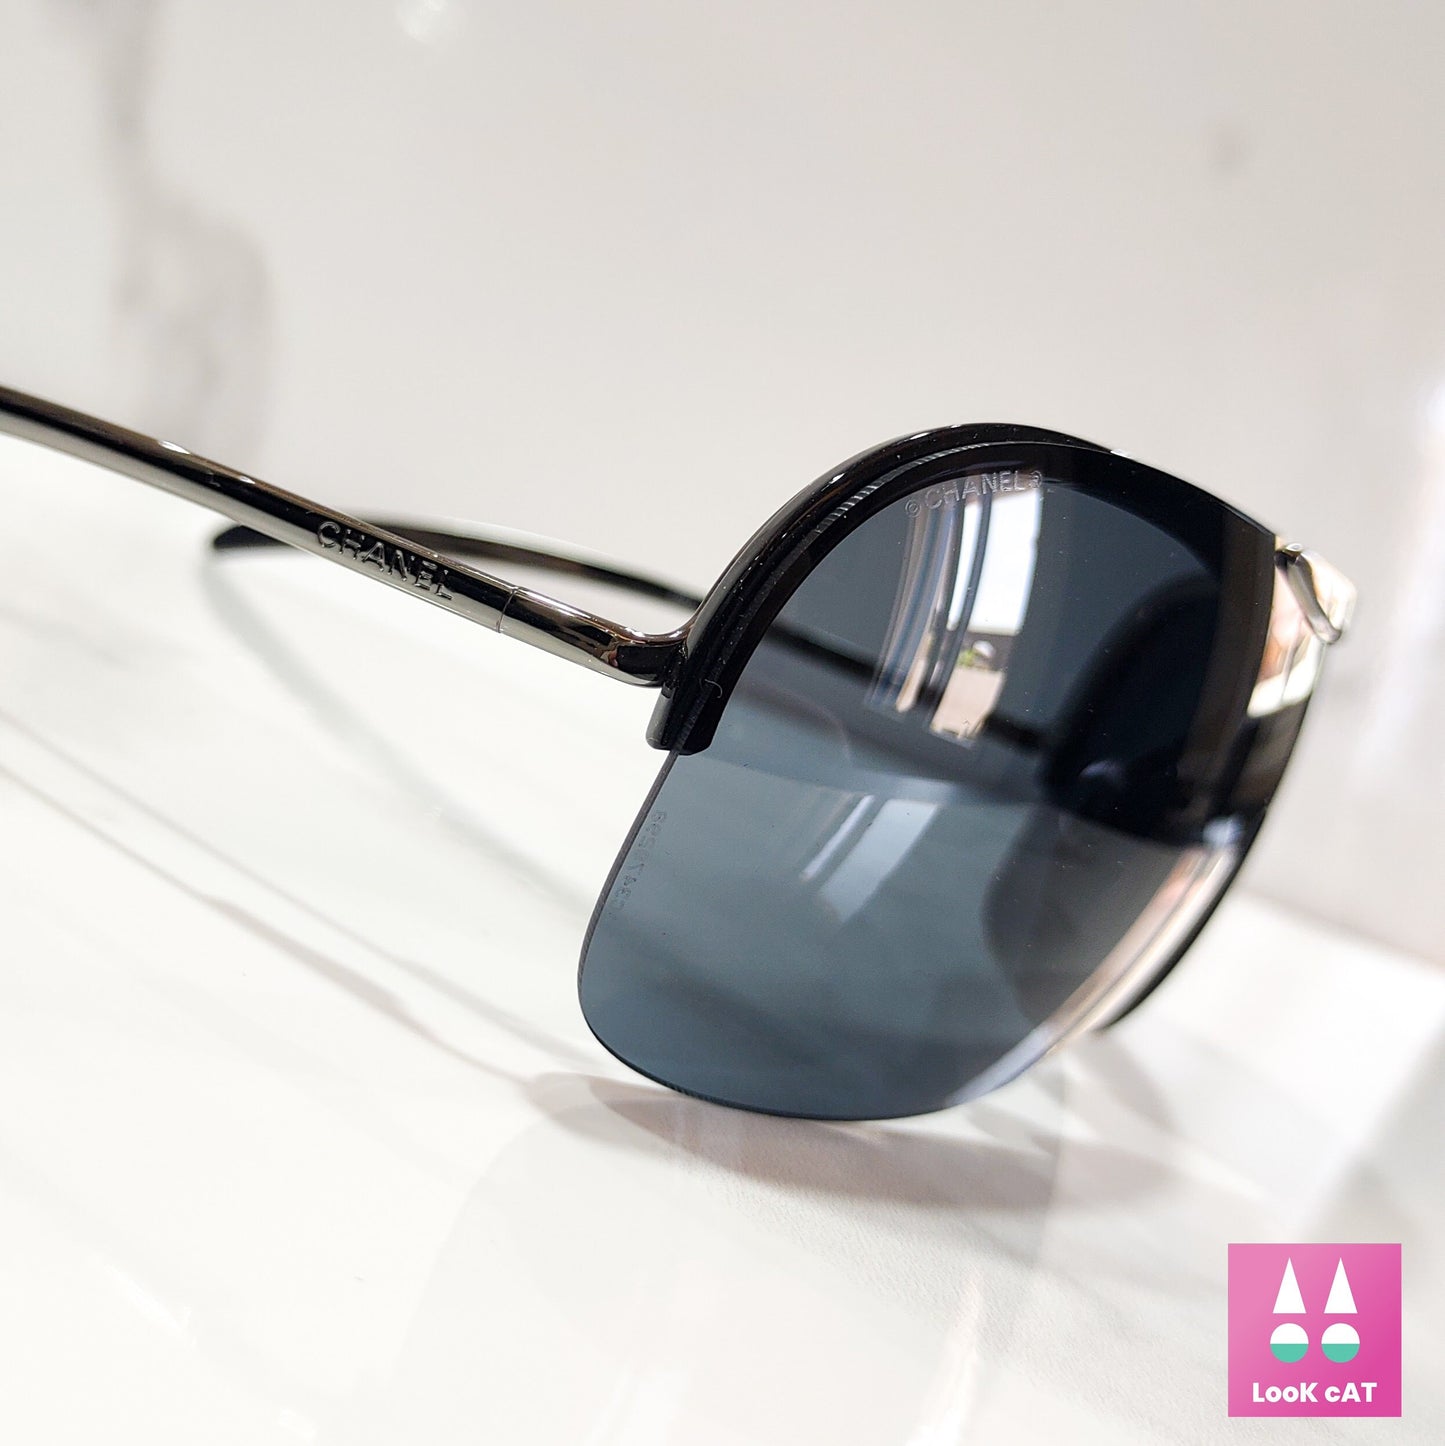 Chanel 6007 occhiali da sole senza montatura NOS wrap shield lunetta brille y2k shades pilot